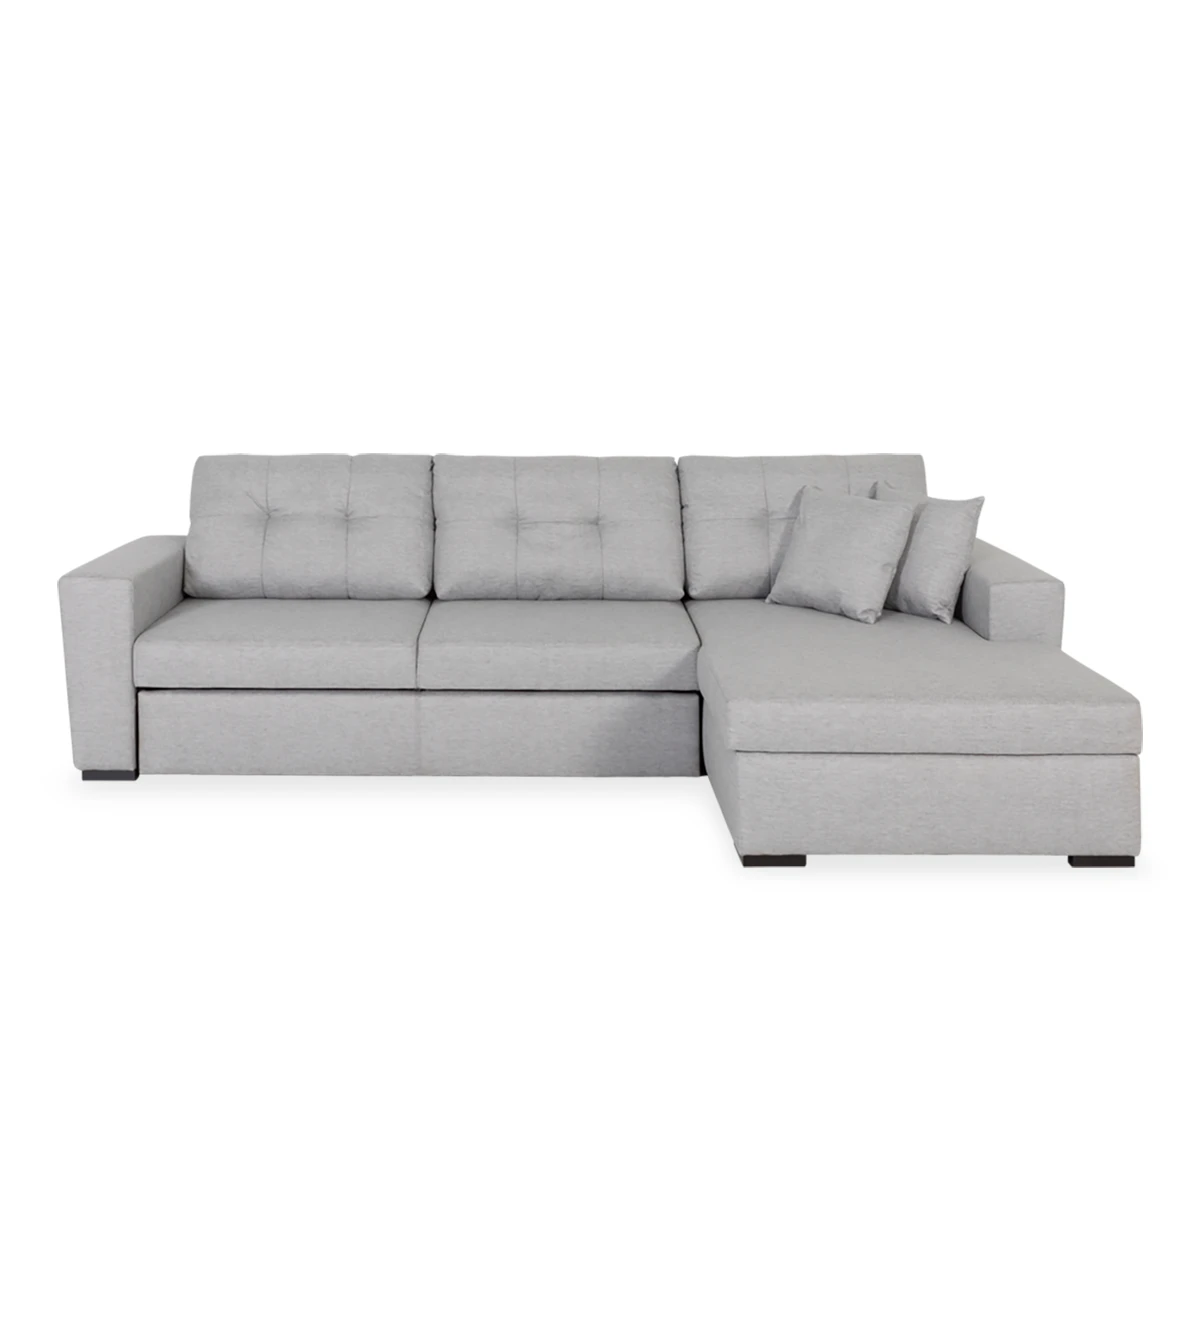 Sofá cama Macau 2 plazas y chaise longue derecha, tapizado en tela gris claro, 284 cm.